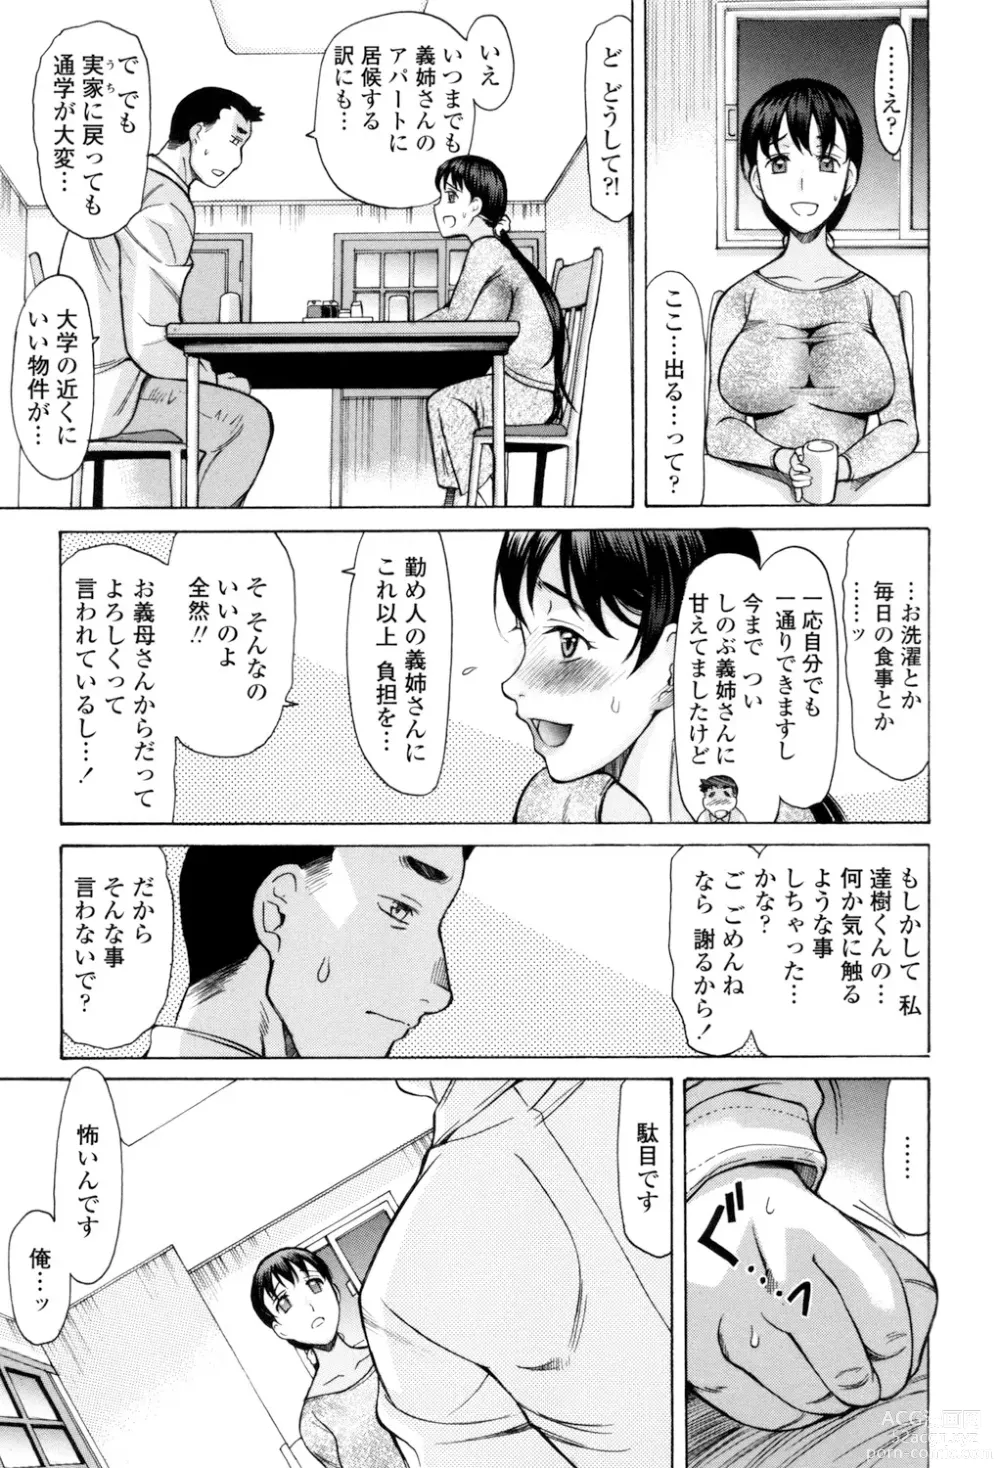 Page 6 of manga Yasashiku Okashite - Please Softly Raping